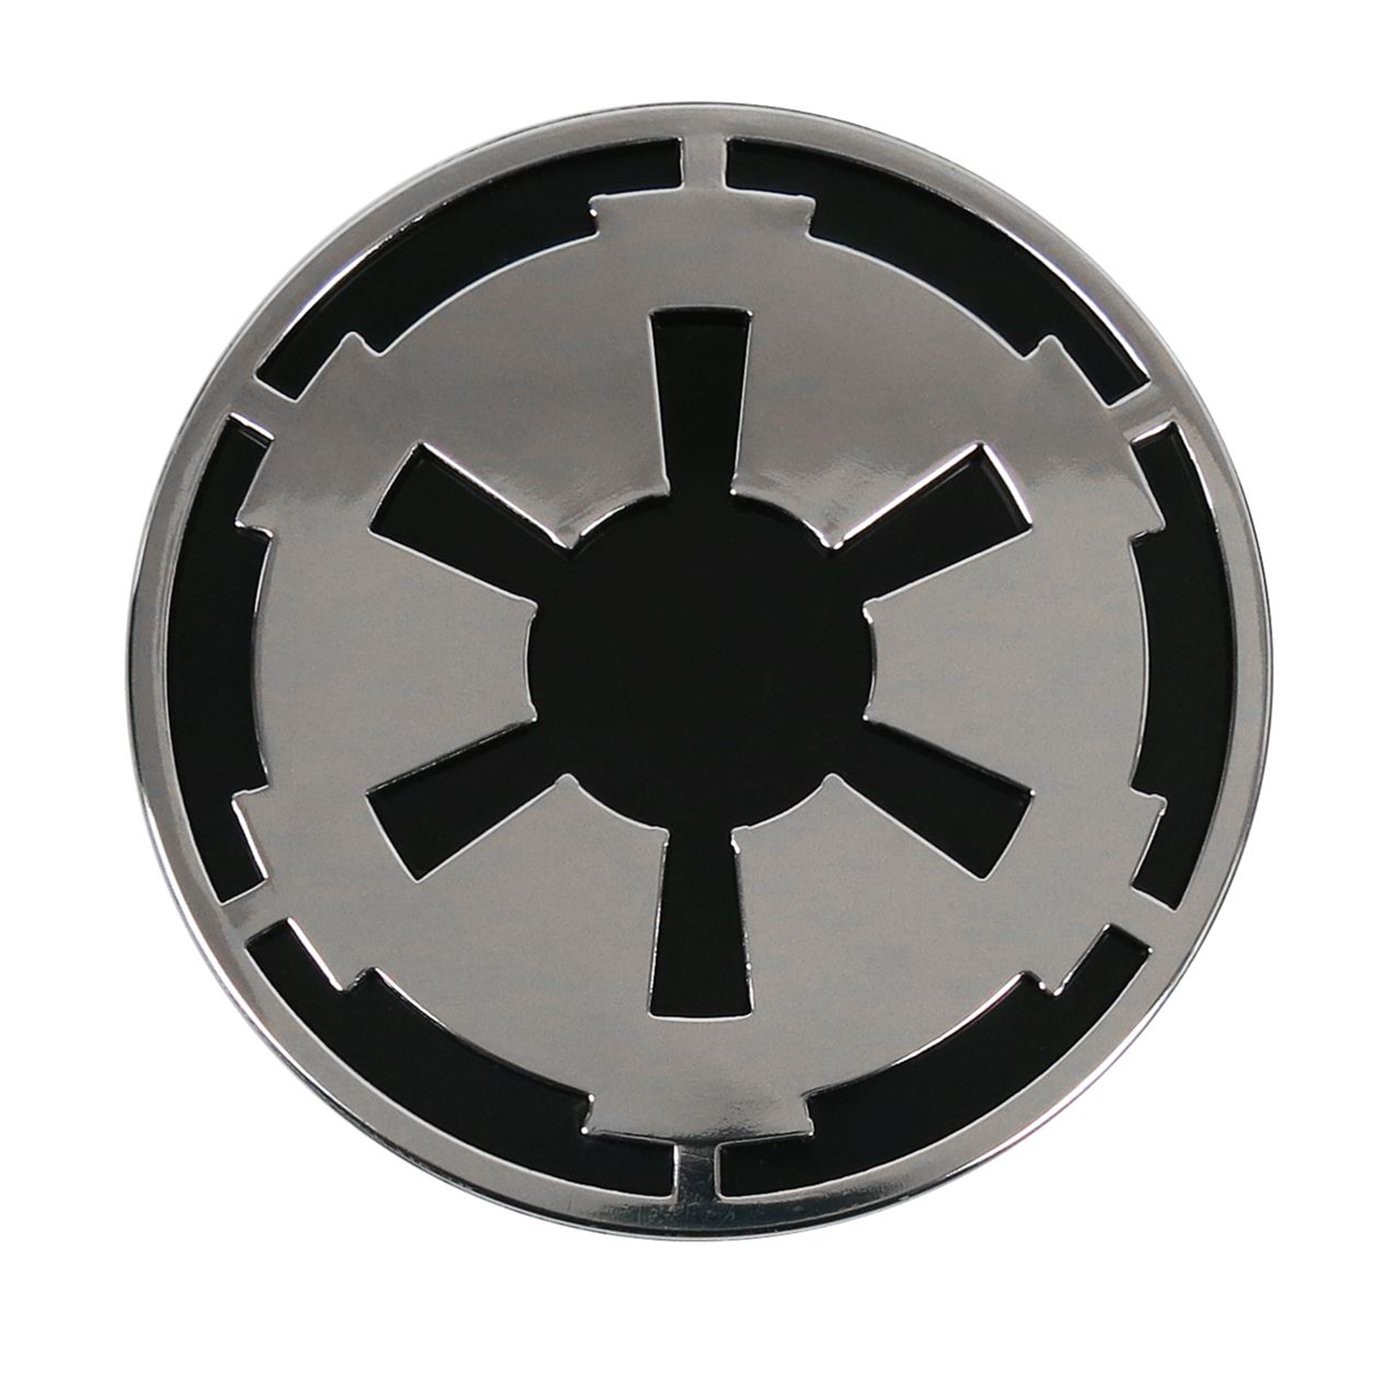 Star Wars Empire Chrome Car Emblem